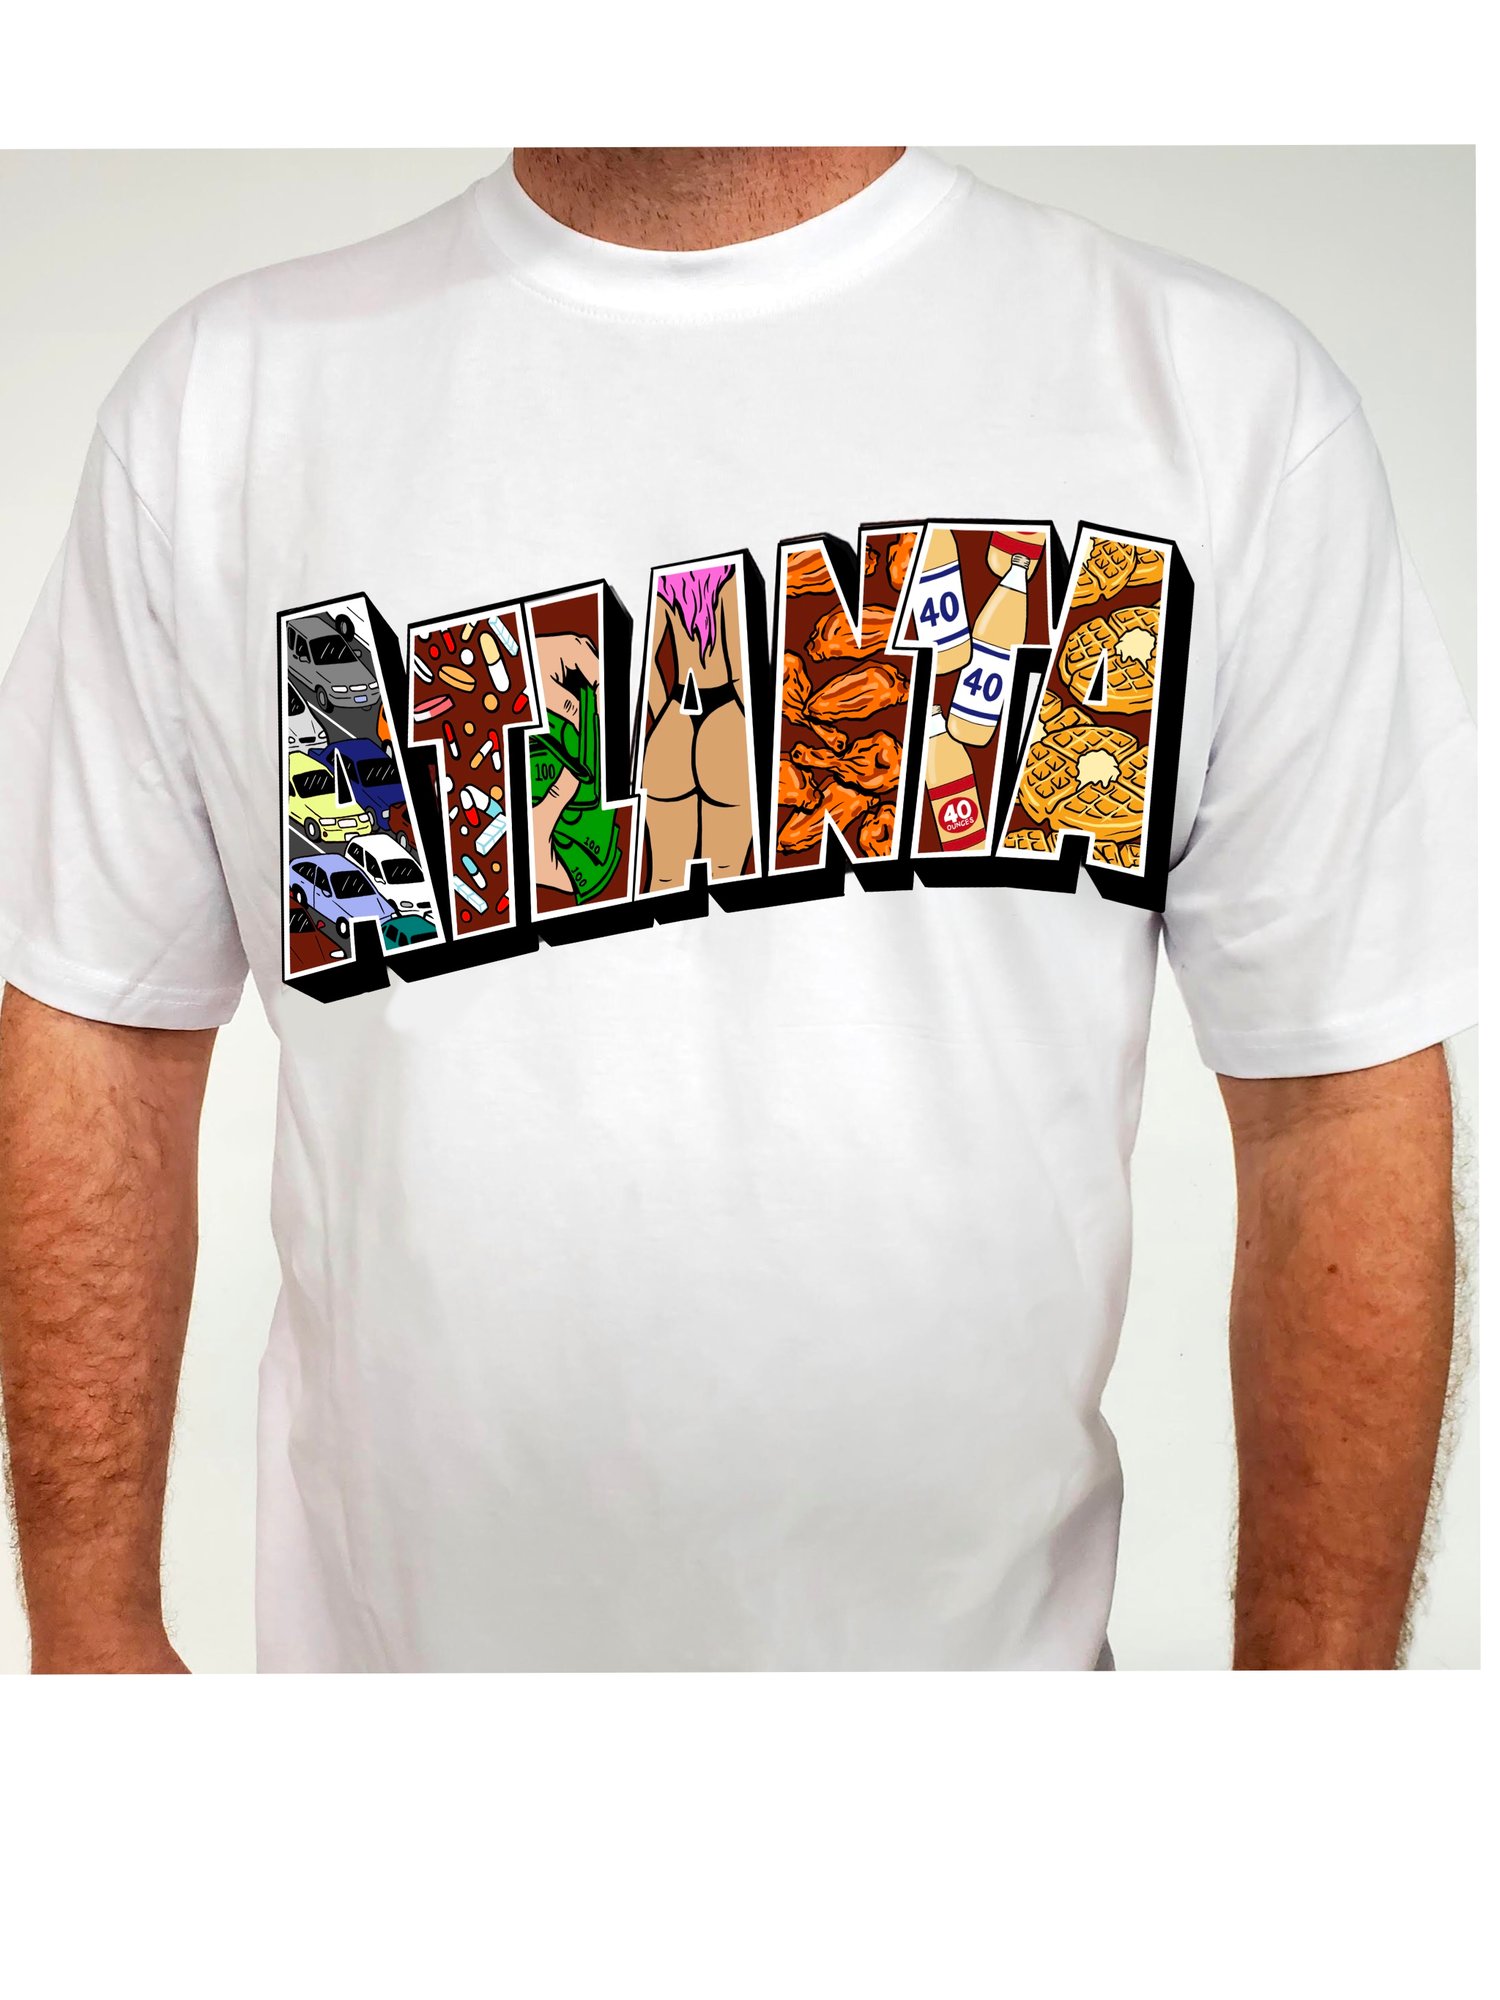 Image of Atl post card shirt 2.0 preorder